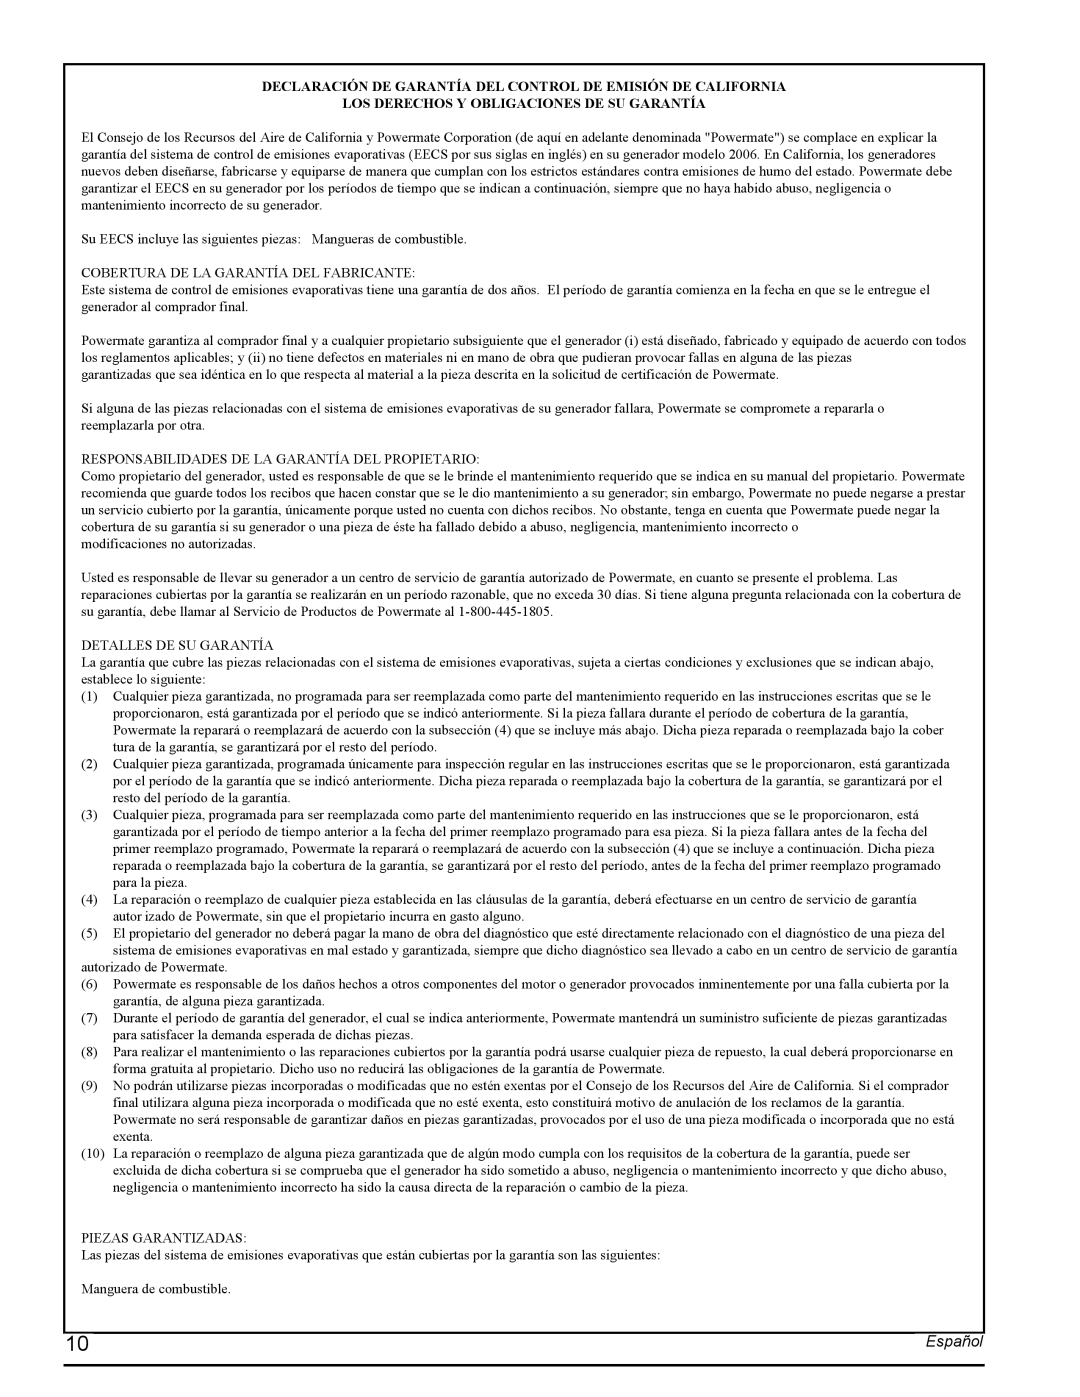 Powermate PMC435251 manual Los Derechos Y Obligaciones De Su Garantía, Español 